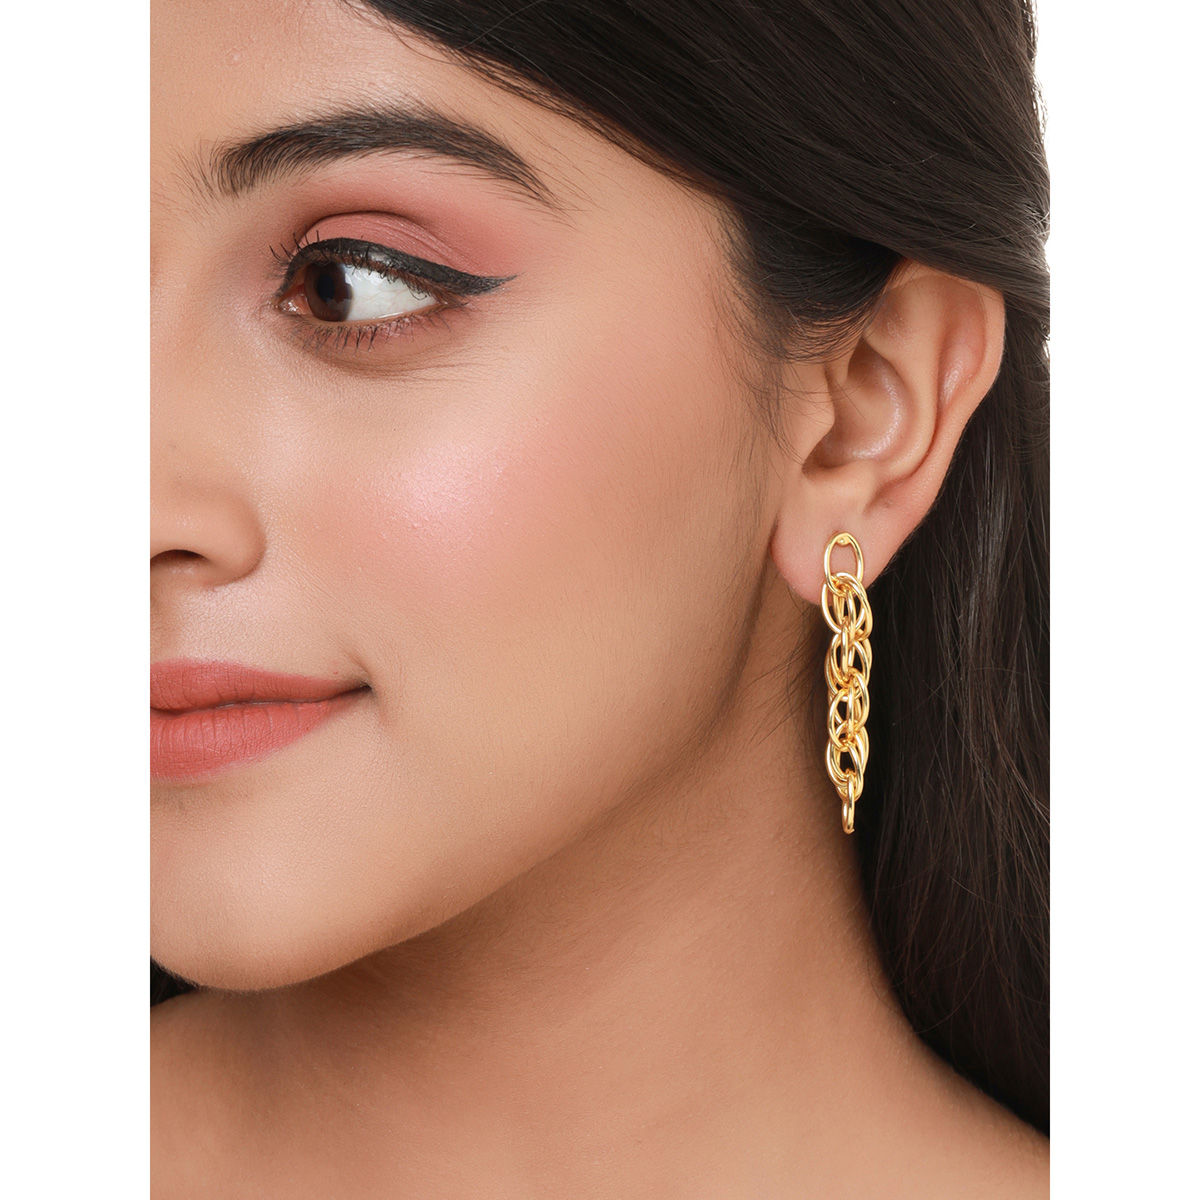 Buy MANVEER ENTERPRISE 1 Gram Gold Earrings German Silver Tops Top Earring  Jhumki Jhumkas Jumka Studs Online at Best Prices in India  JioMart